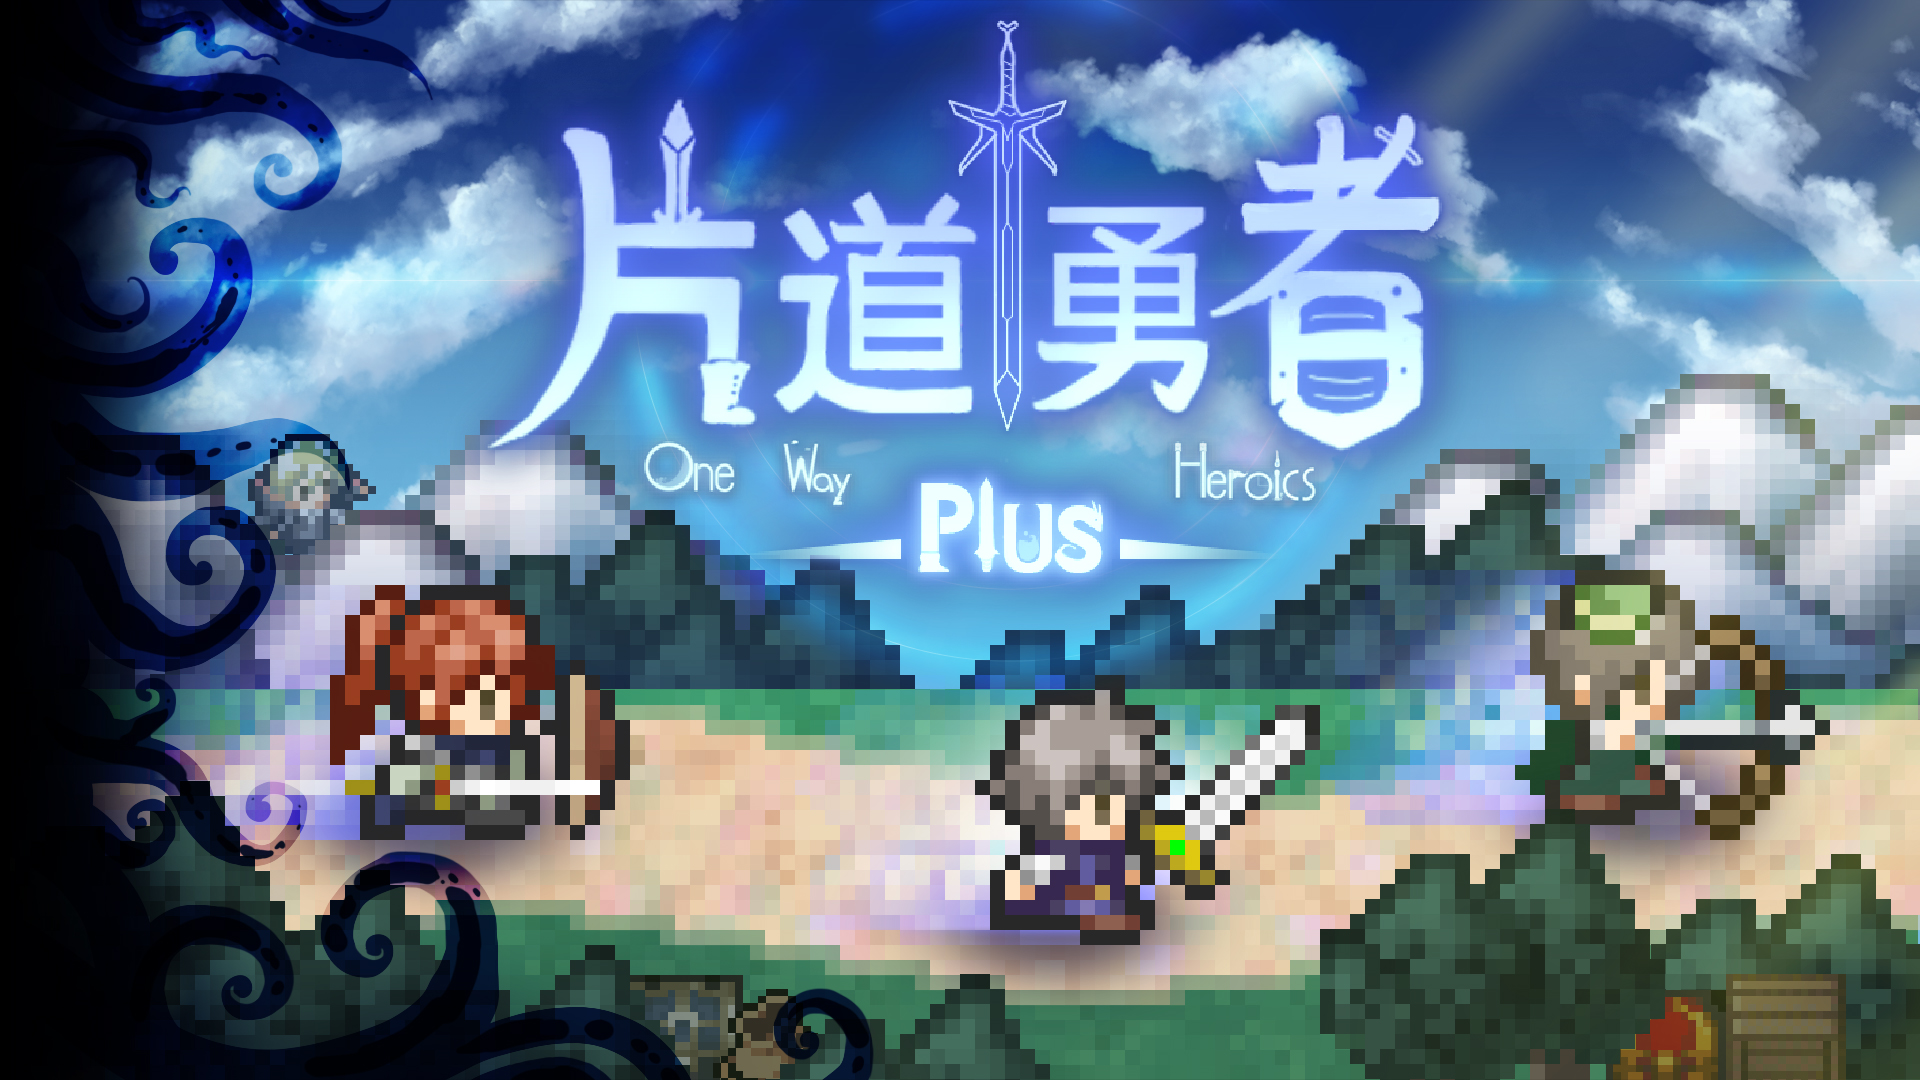 经典RPG《片道勇者Plus》与动作RPG《箱庭探者Plus》任天堂eShop登场!